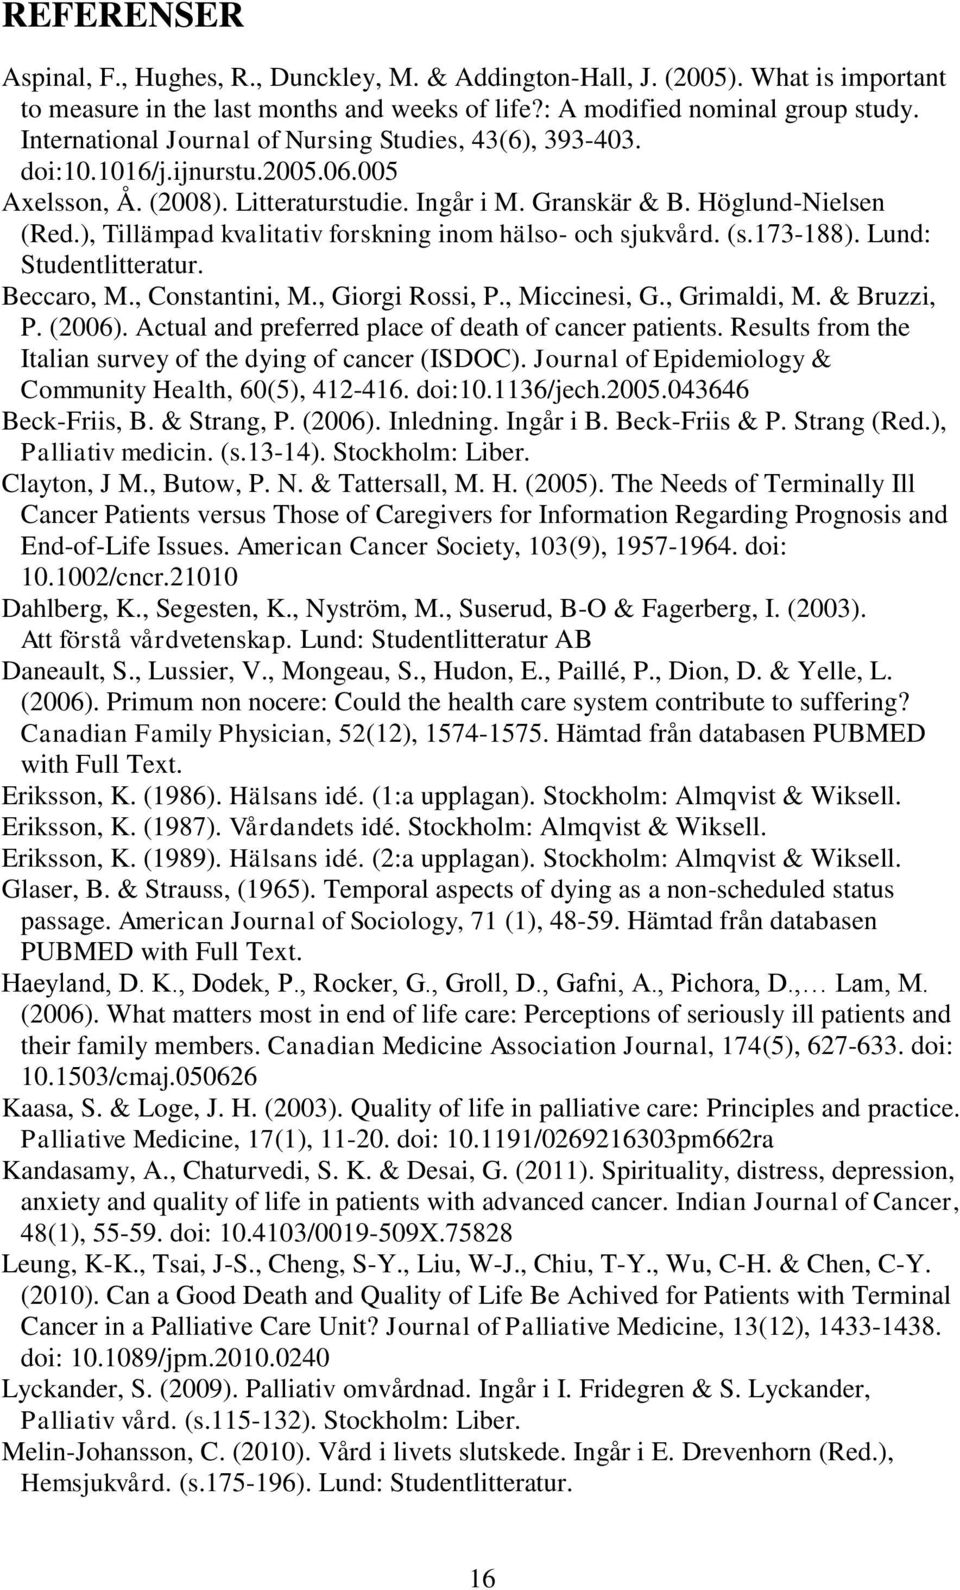 ), Tillämpad kvalitativ forskning inom hälso- och sjukvård. (s.173-188). Lund: Studentlitteratur. Beccaro, M., Constantini, M., Giorgi Rossi, P., Miccinesi, G., Grimaldi, M. & Bruzzi, P. (2006).